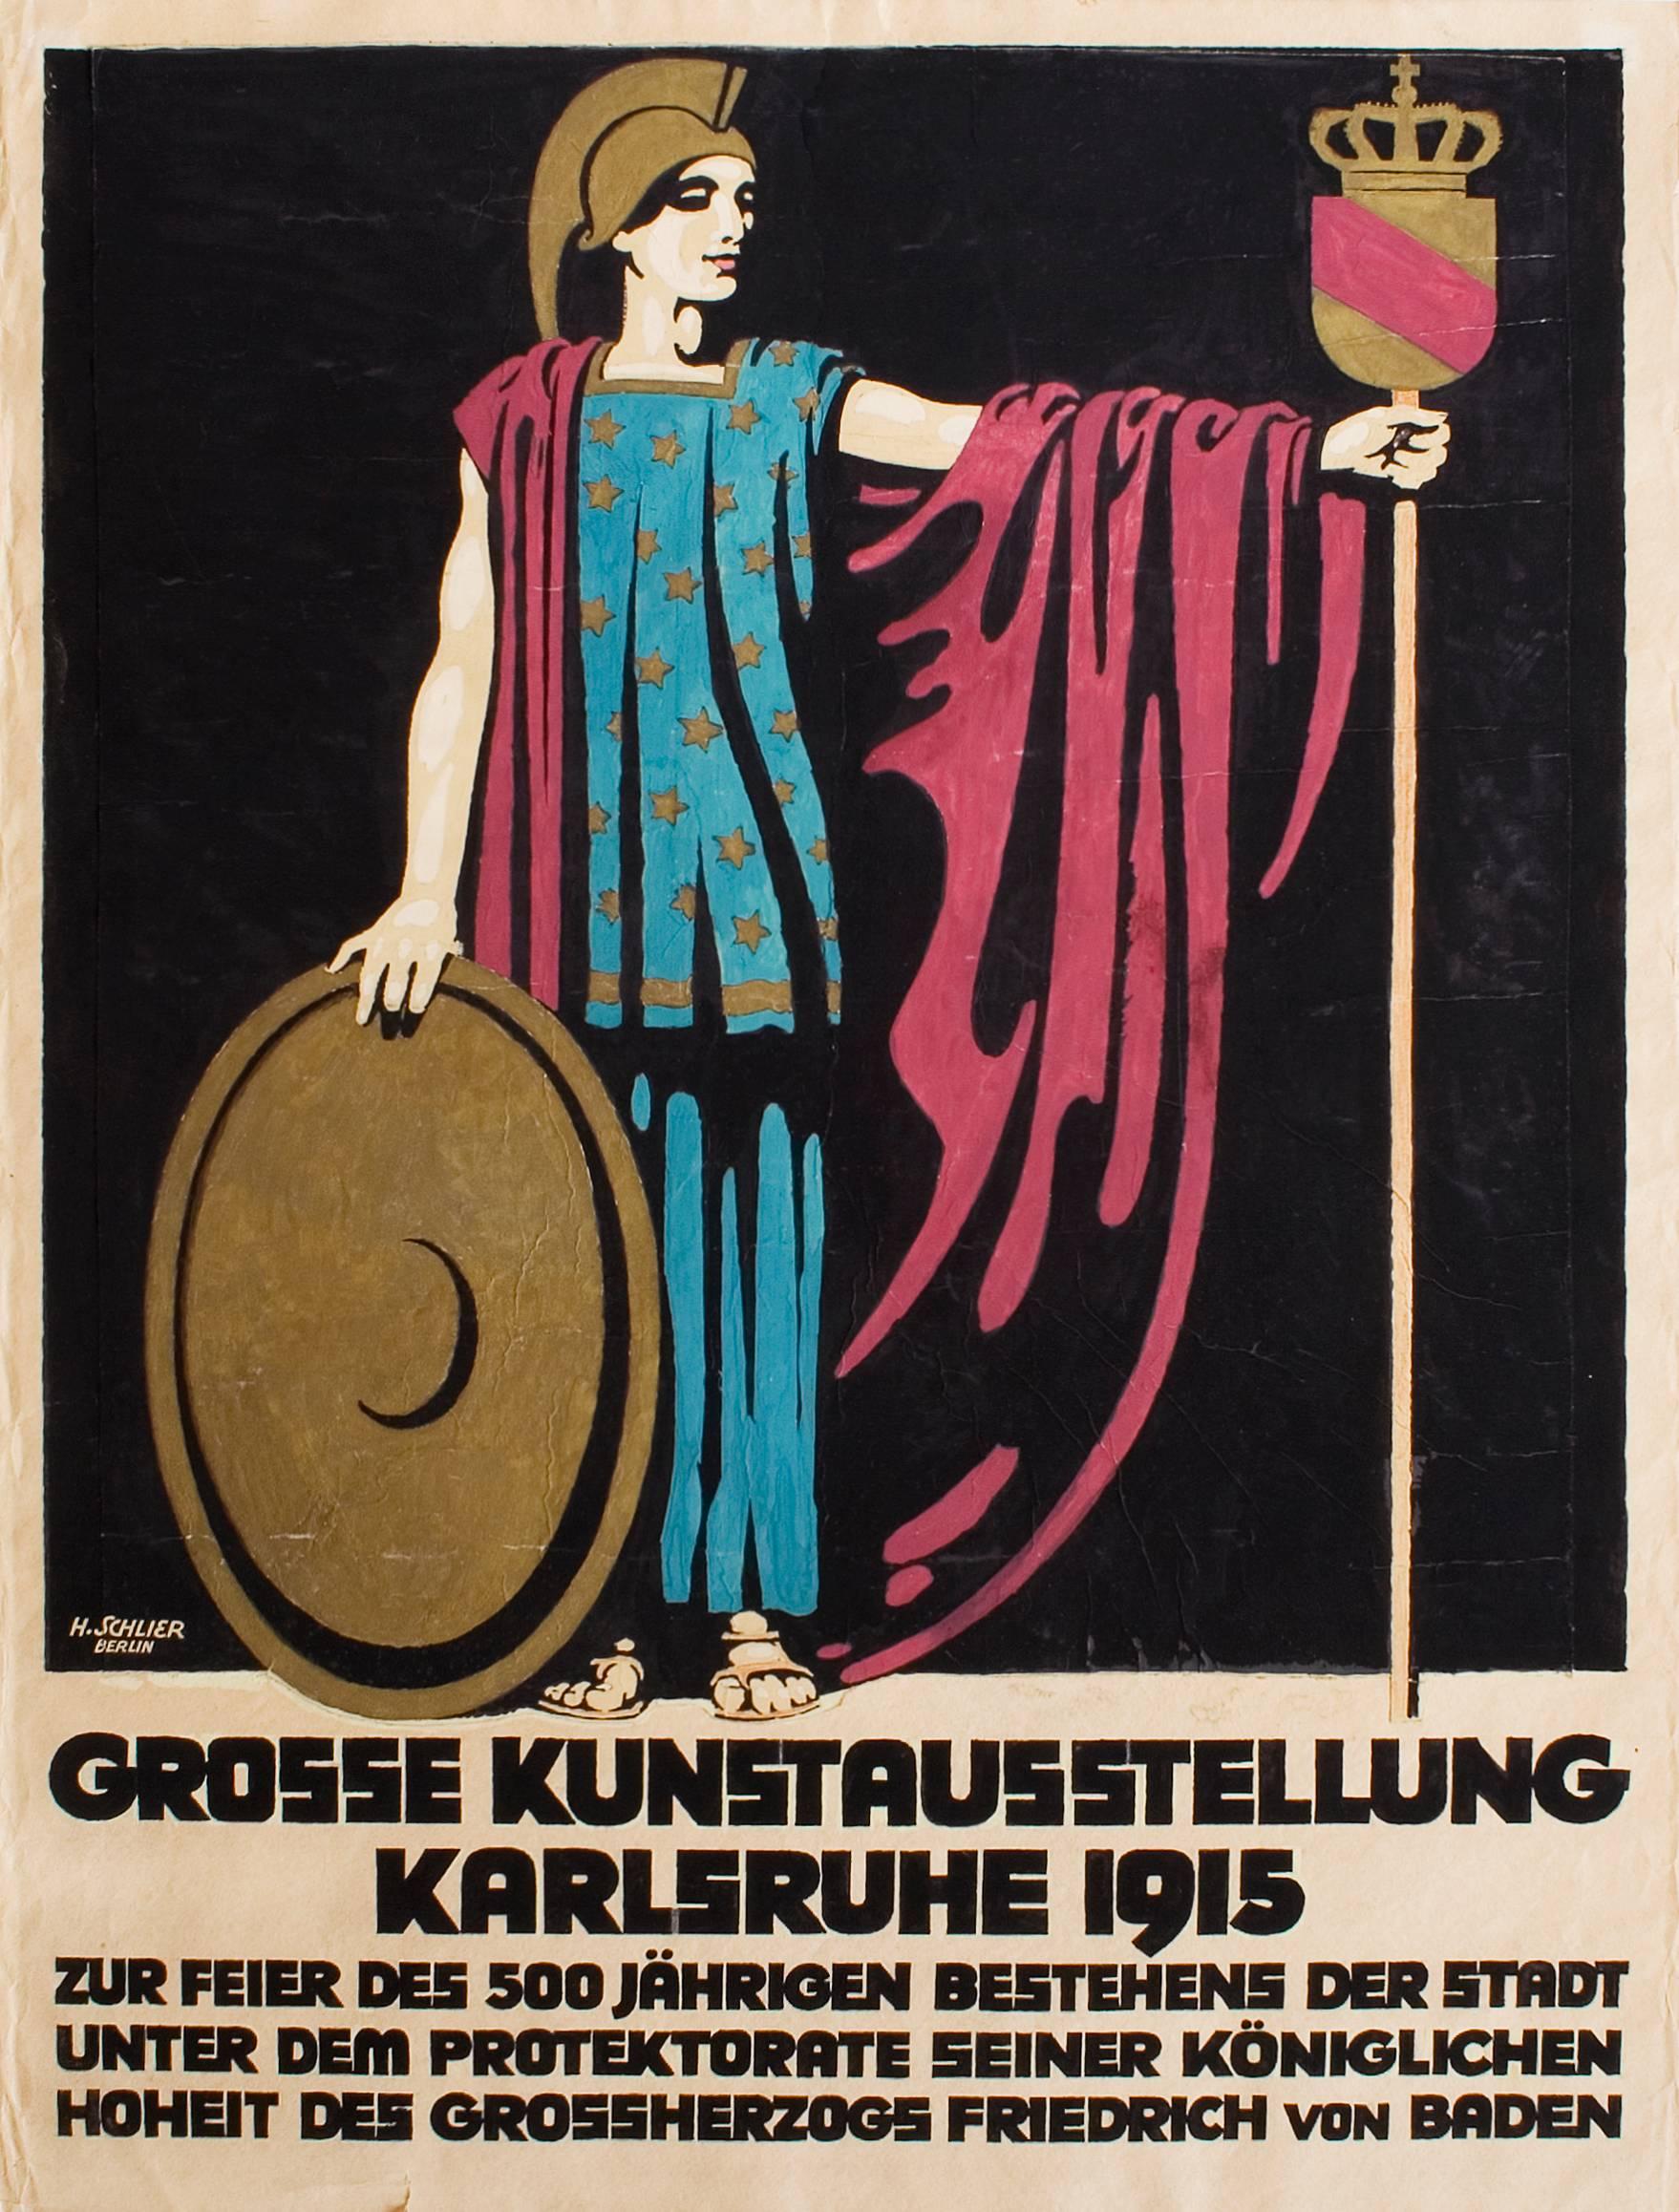 Hans Schlier Figurative Art - Plakatentwurf zur großen Kunstausstellung Karlsruhe 1915 (Poster design)